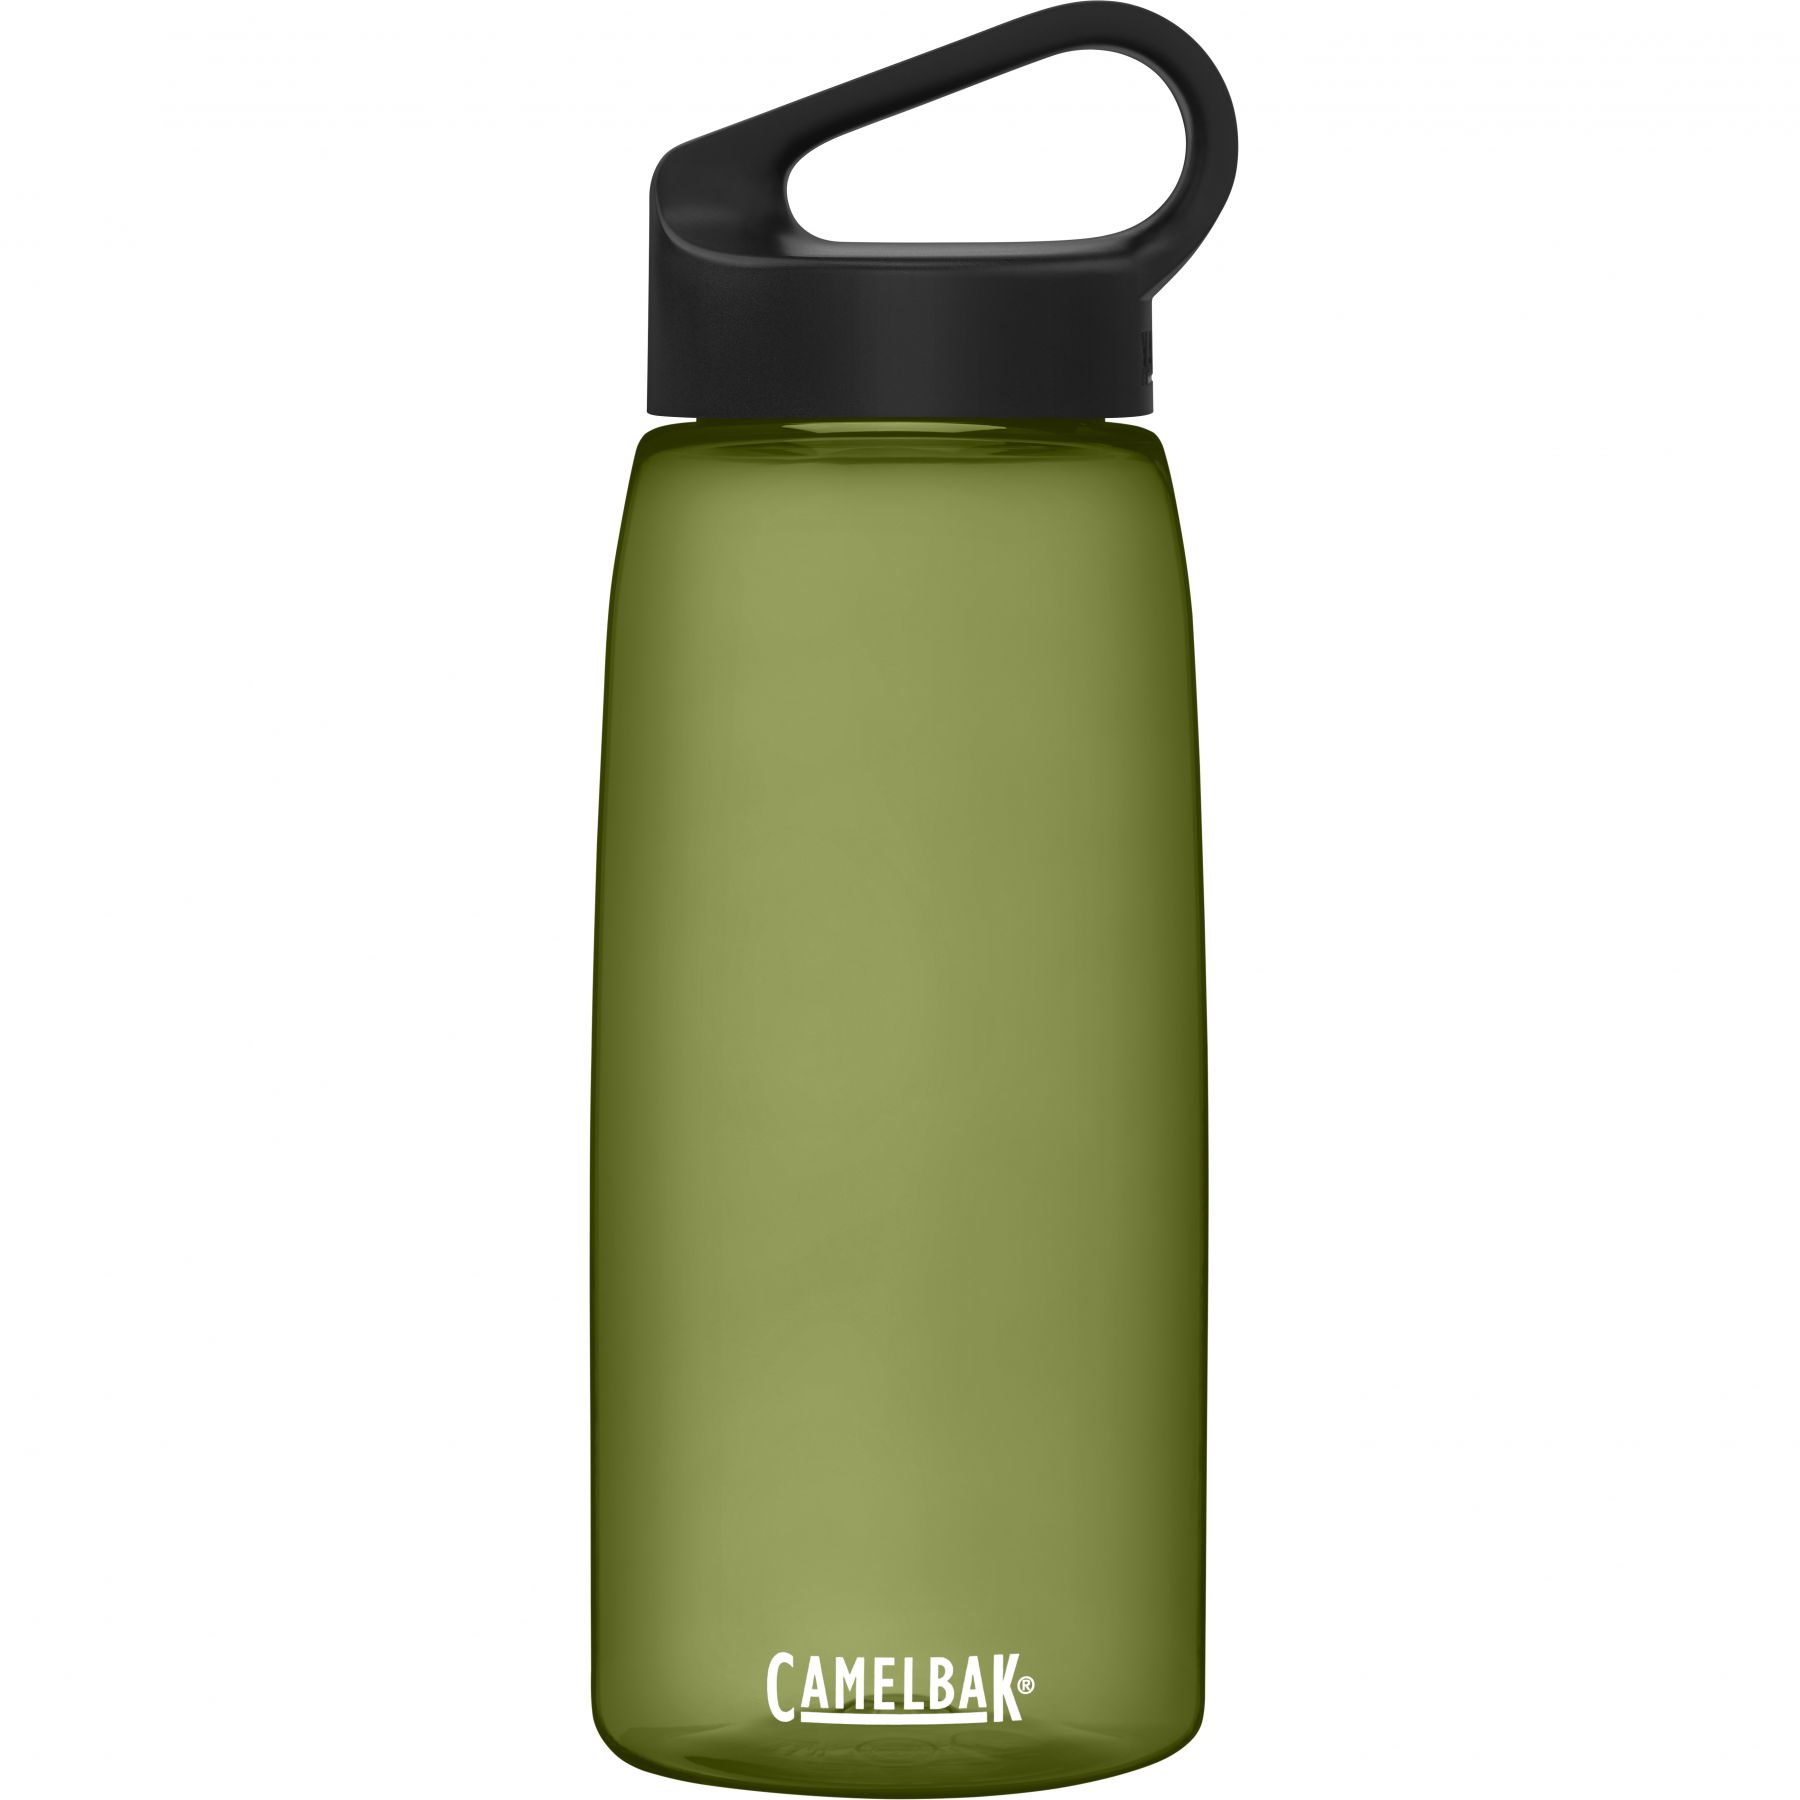 Se Camelbak Carry Cap 1L drikkedunk-olive - Drikkeflasker /-dunk hos Skisport.dk